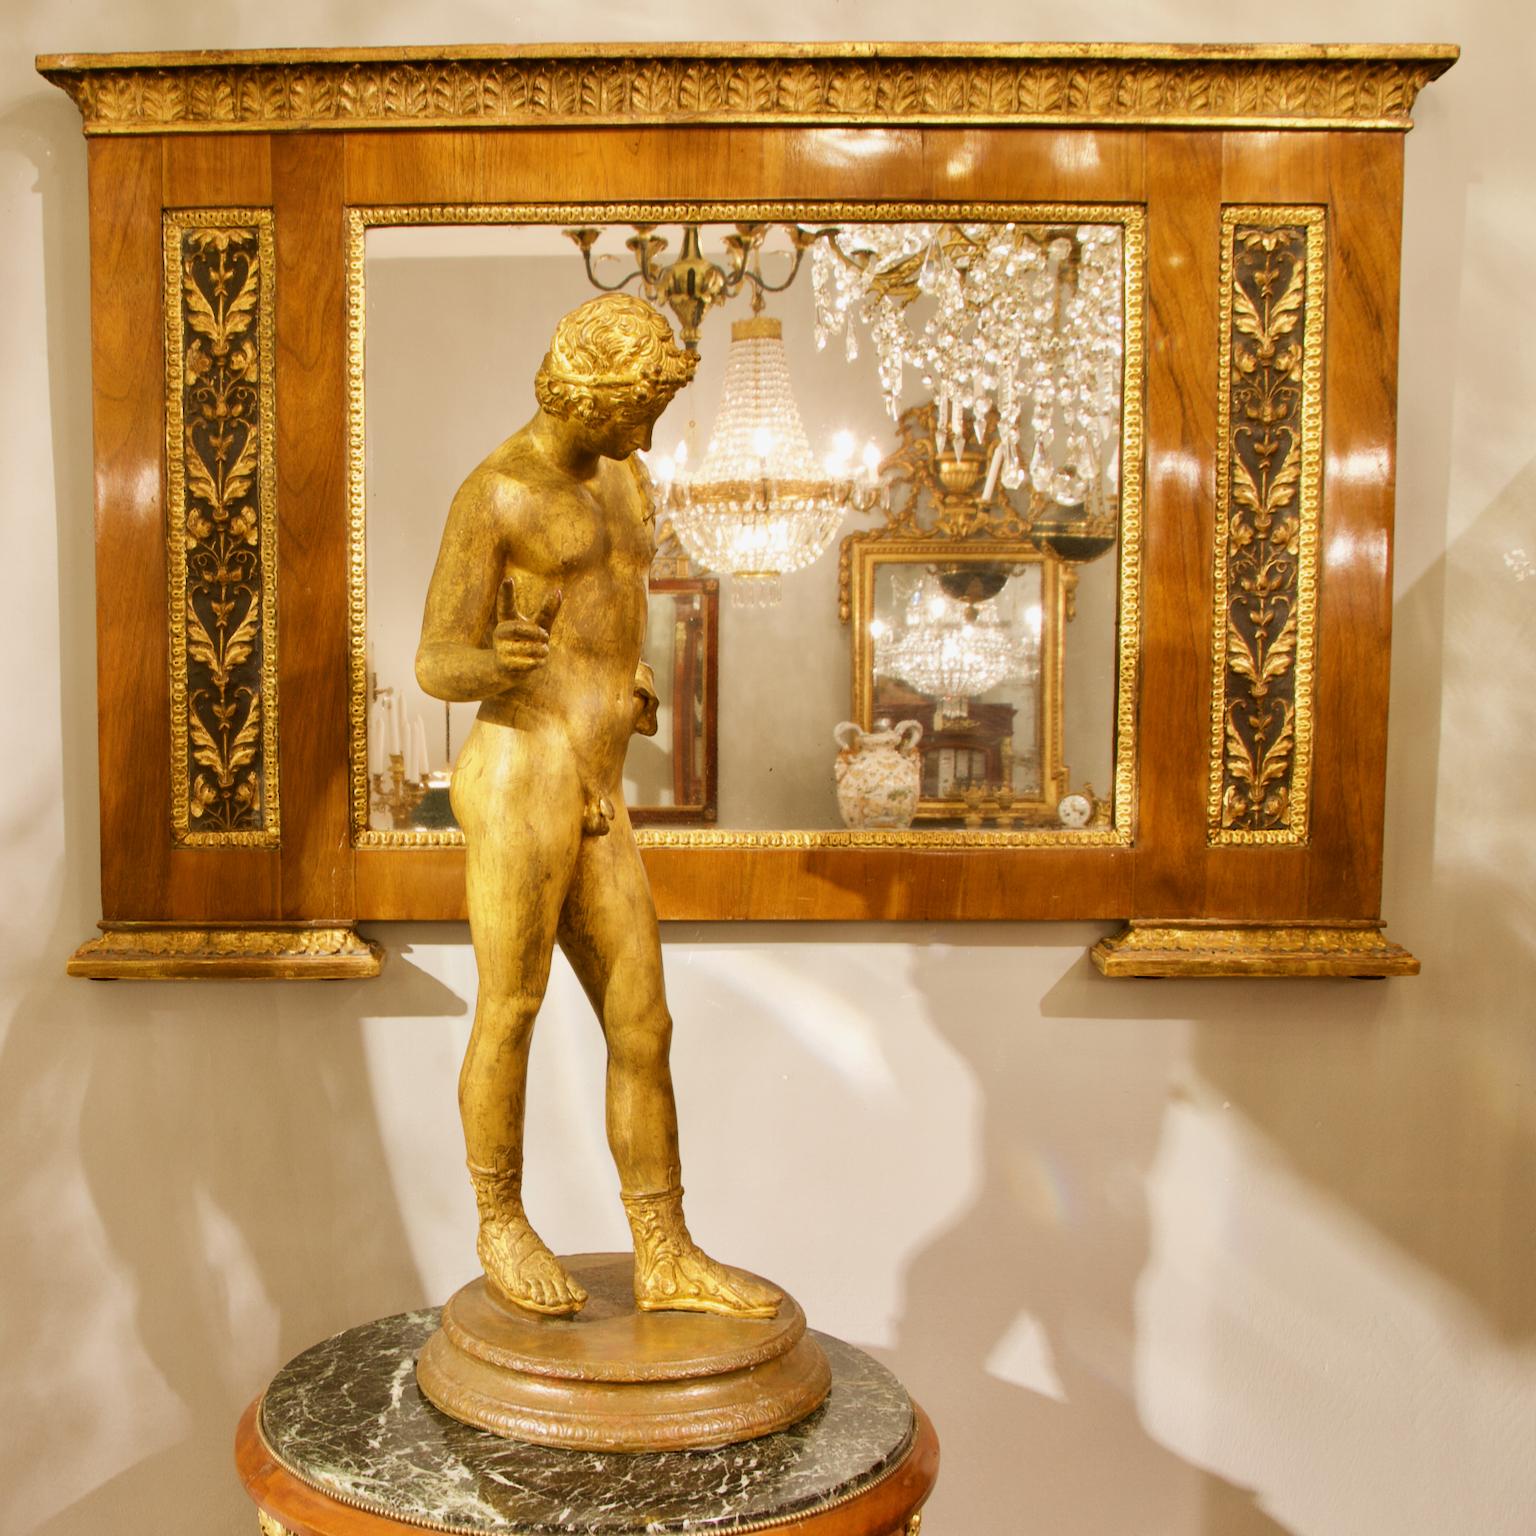 Début du XIXe siècle Italie du Nord Miroir à trumeau en noyer et bois doré d'époque Empire néoclassique 

Très rare et élégant miroir à trumeau en placage de noyer et bois doré d'Italie du Nord, de format paysage, datant d'environ 1820. Avec une